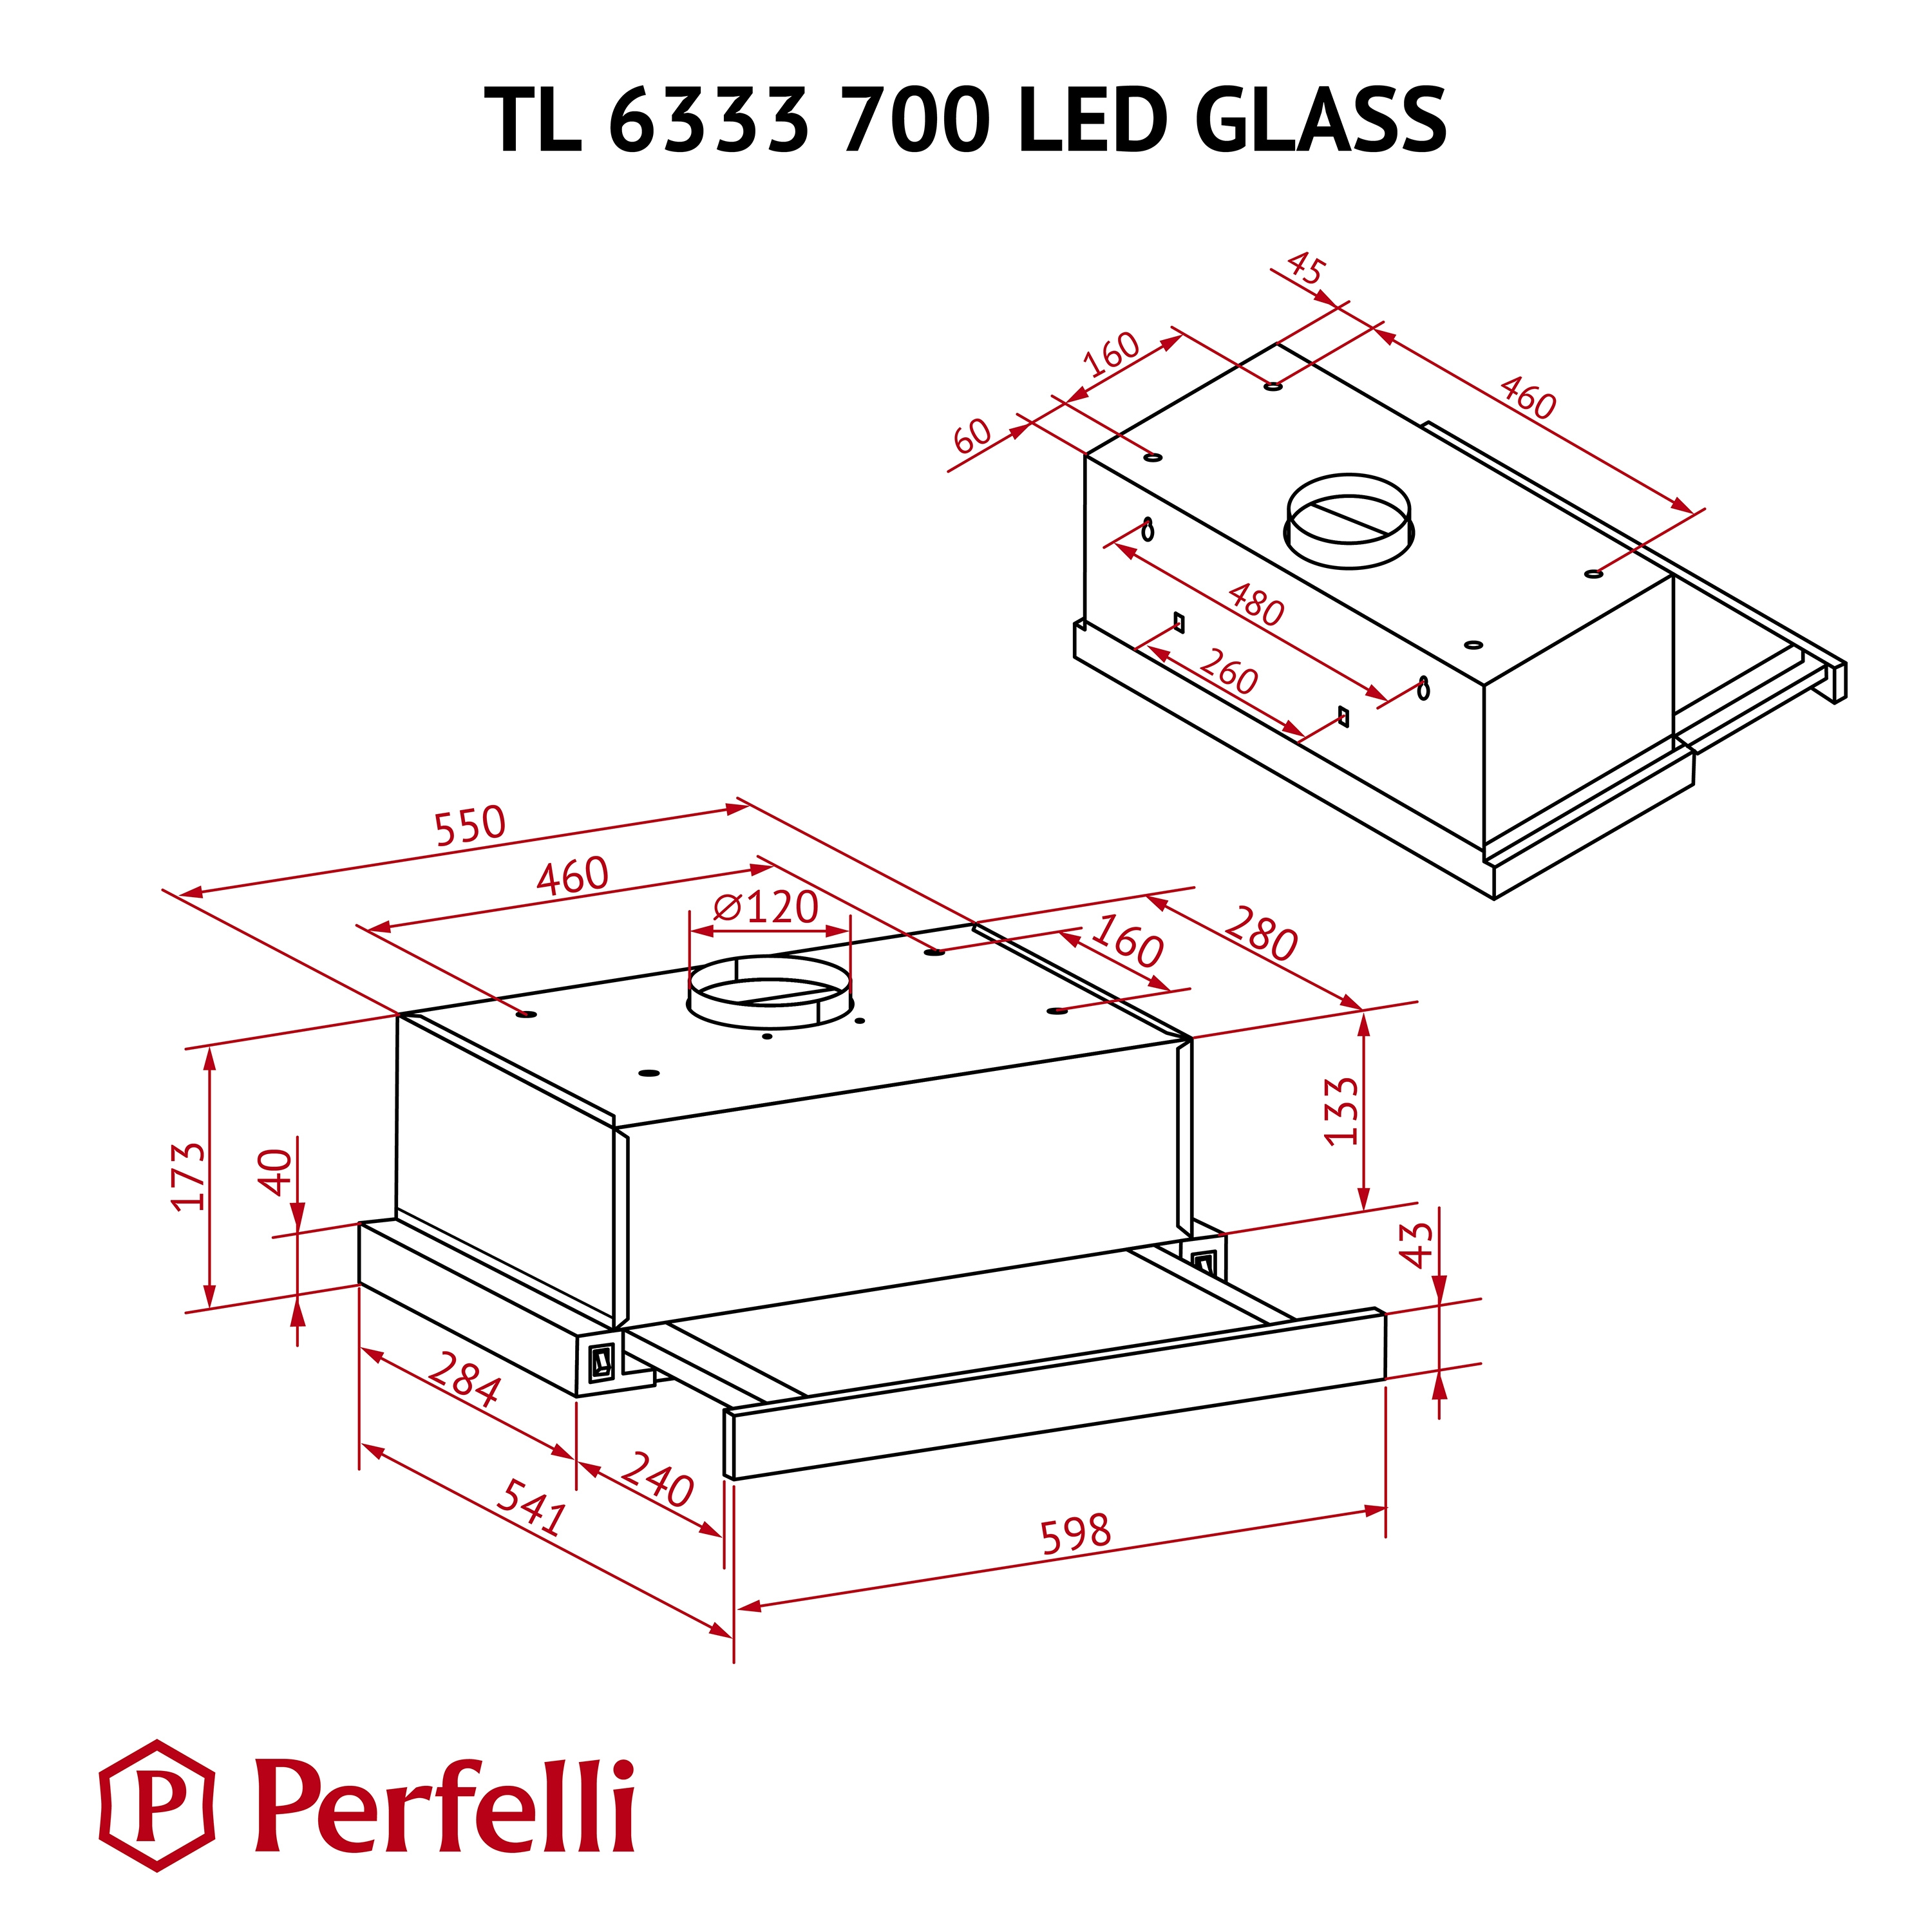 Perfelli TL 6333 WH 700 LED GLASS Габаритні розміри